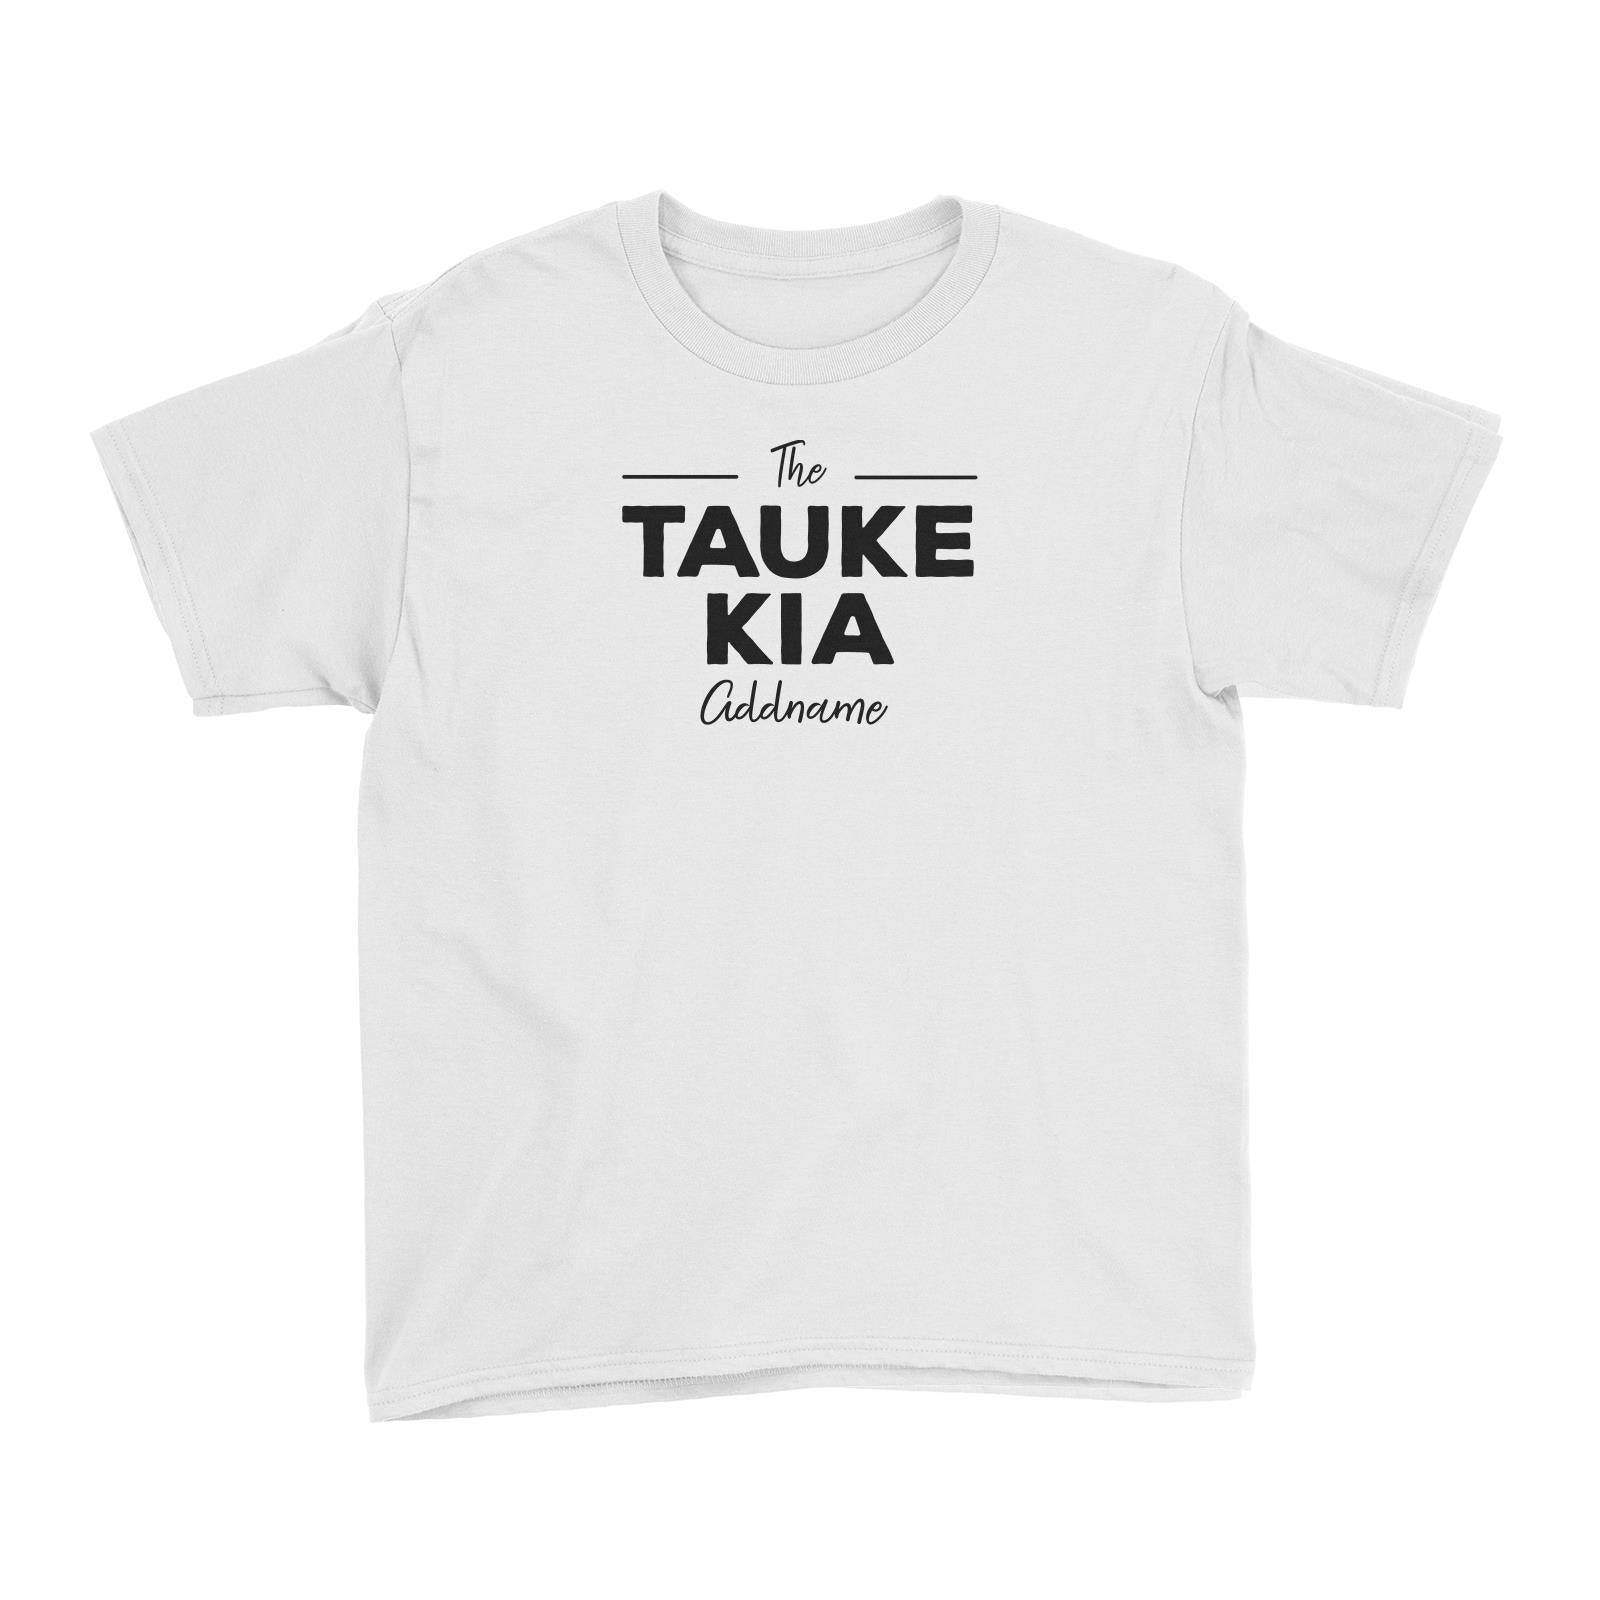 The Tauke Kia Kid's T-Shirt